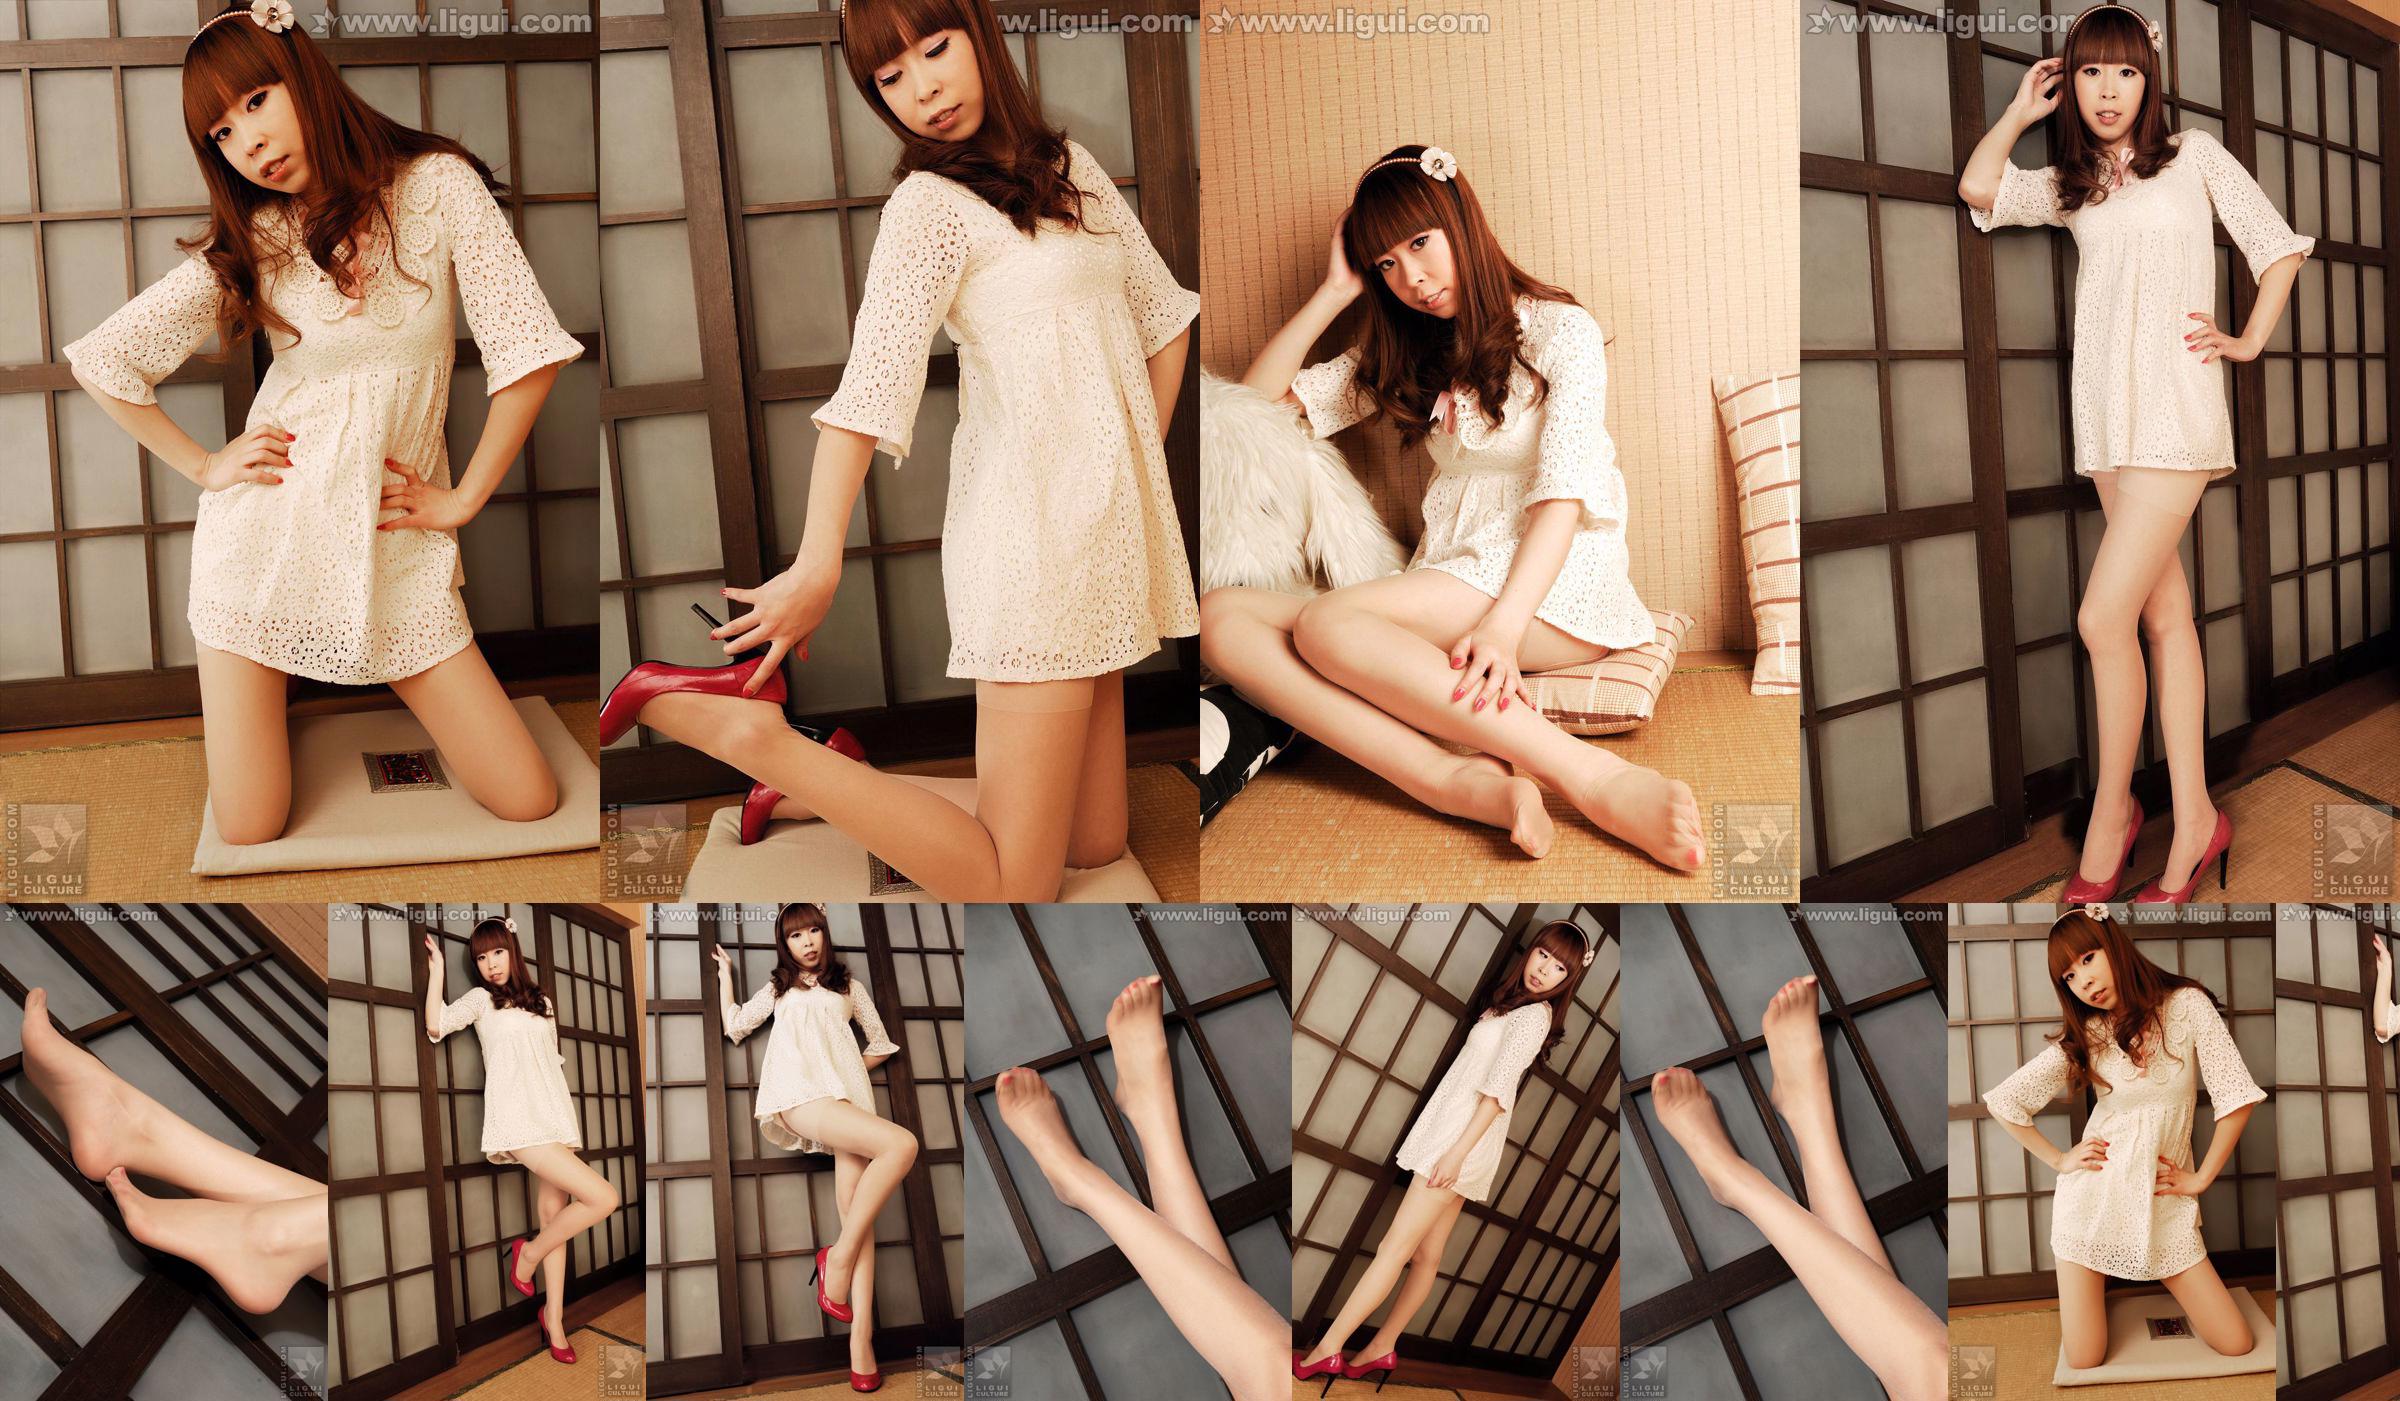 นางแบบ Vikcy "The Temptation of Japanese Style" [丽柜 LiGui] รูปถ่ายขาสวยและเท้าหยก No.0dd1aa หน้า 1